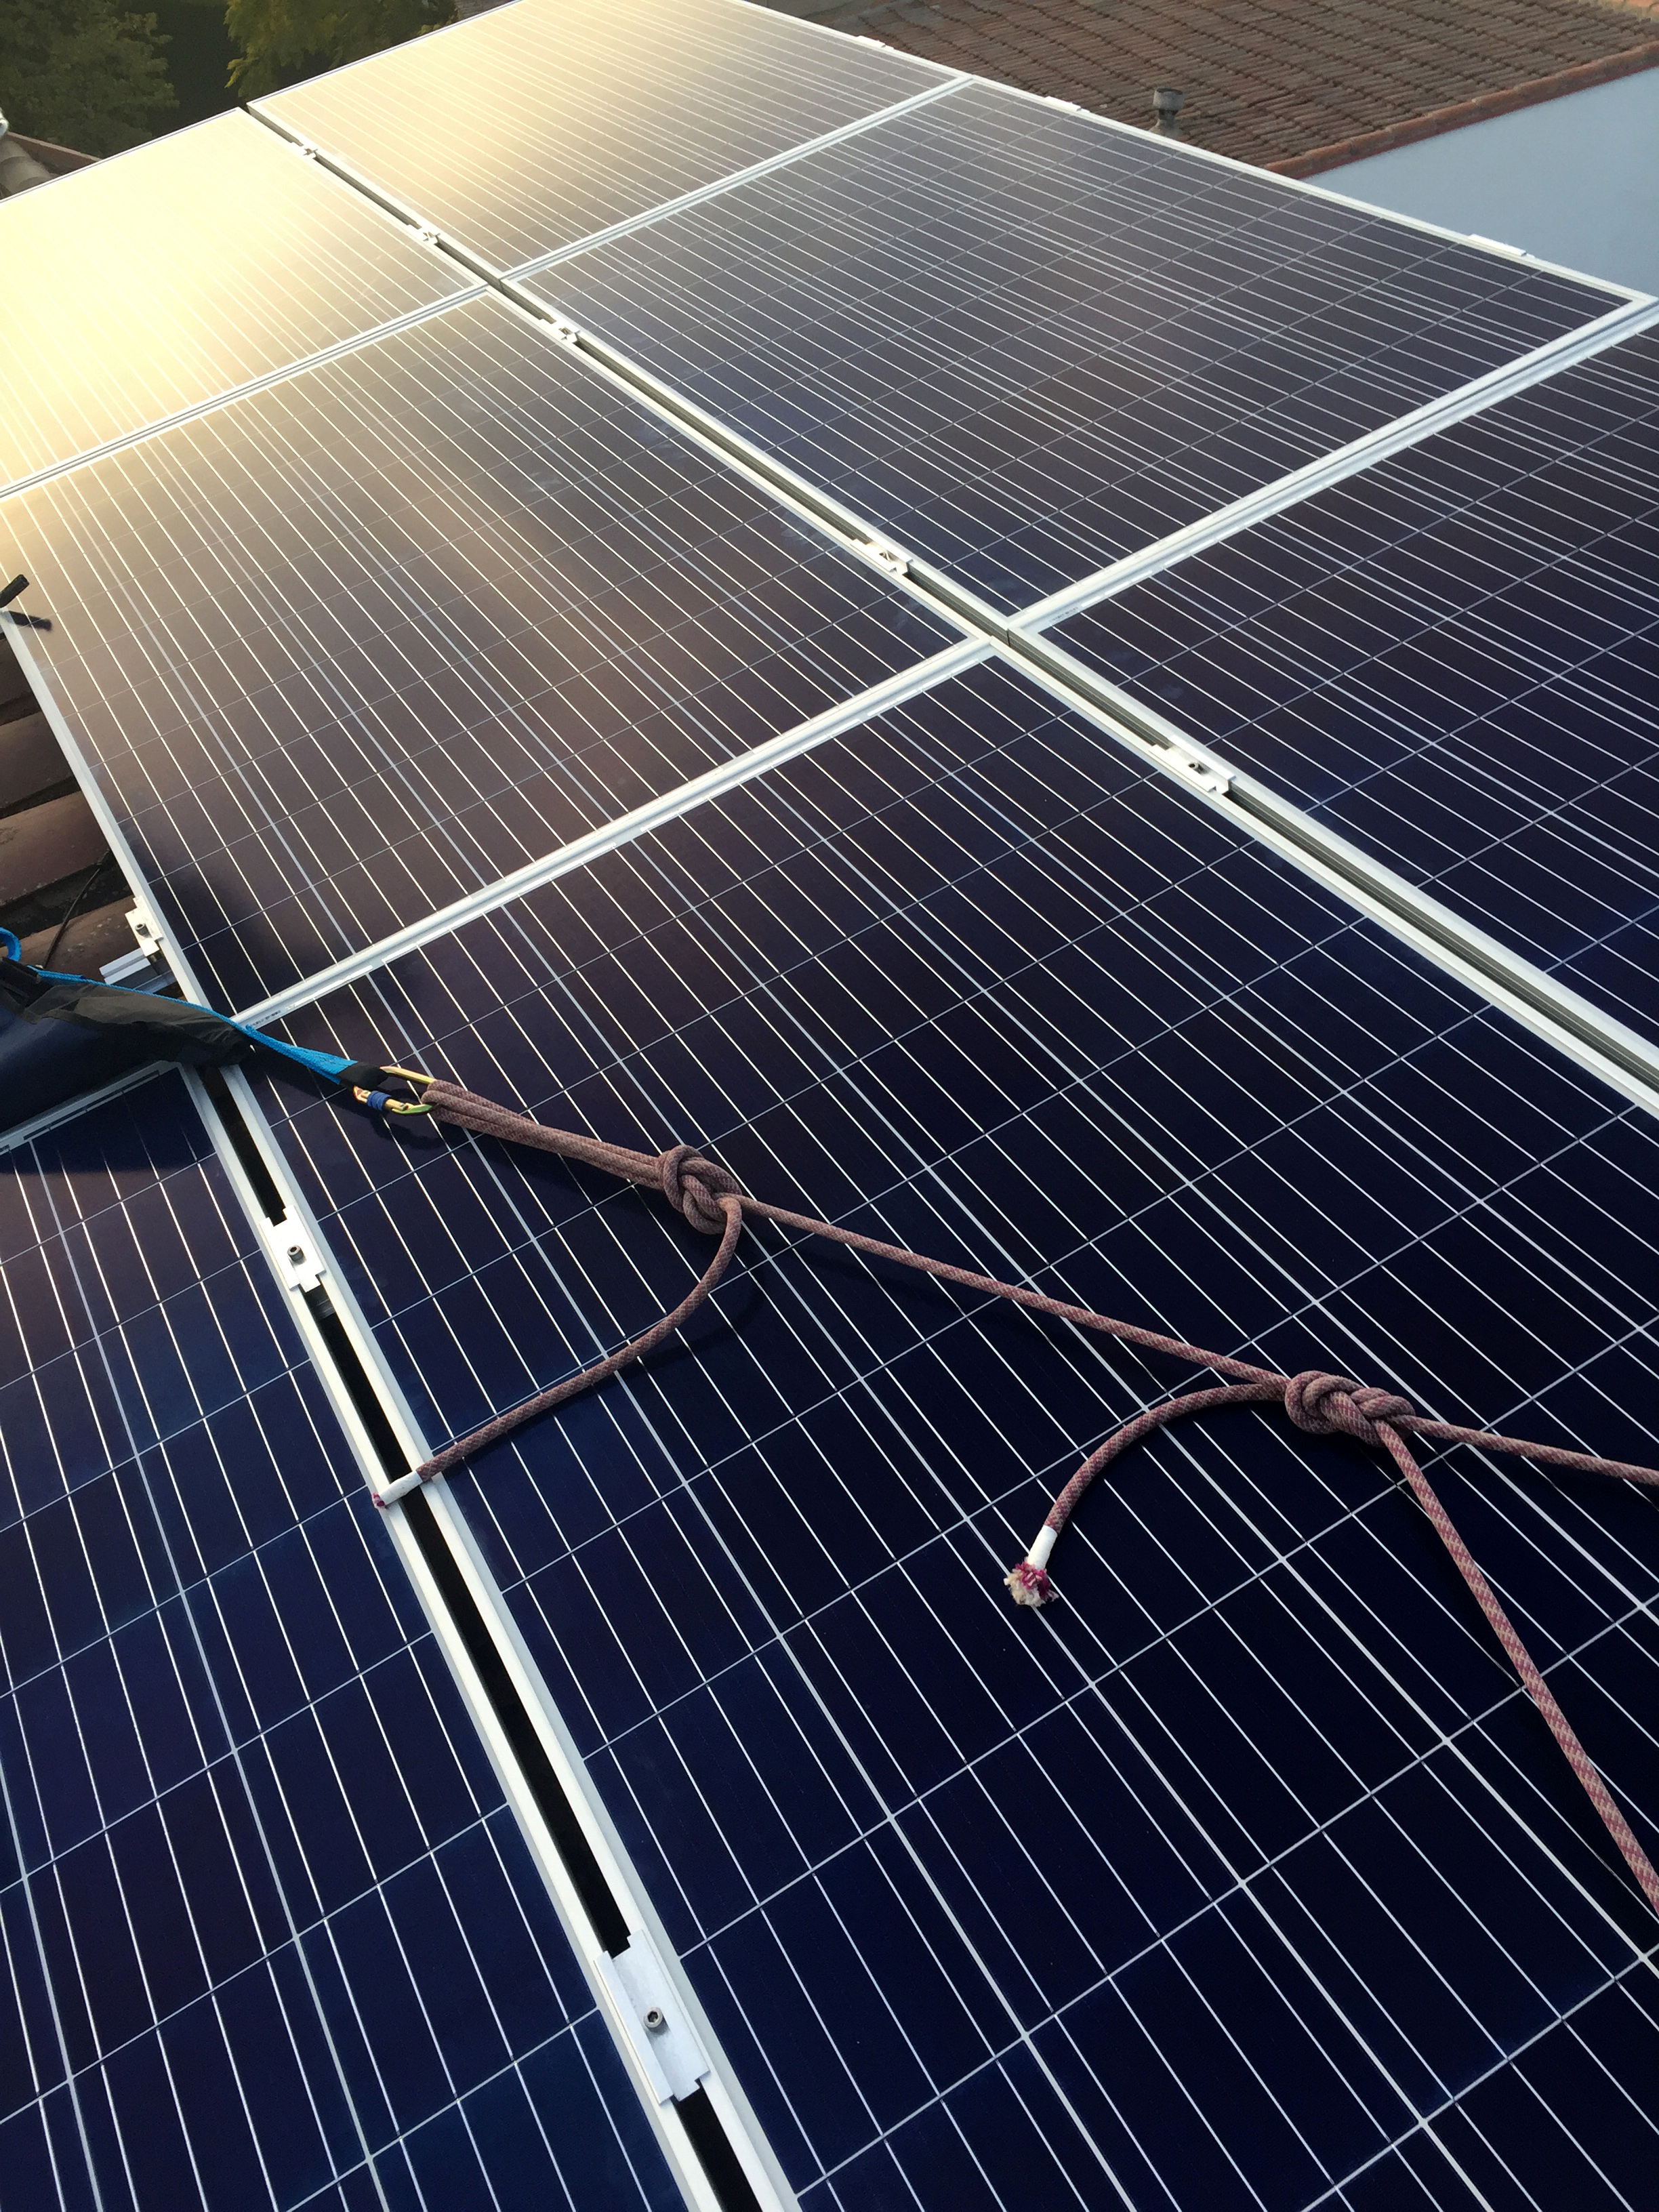 plaques solars fotovoltaiques i per sobre la línia de vida instal·lada que permet als treballadors de Jorfe treballar en alçada sense perill de caiguda